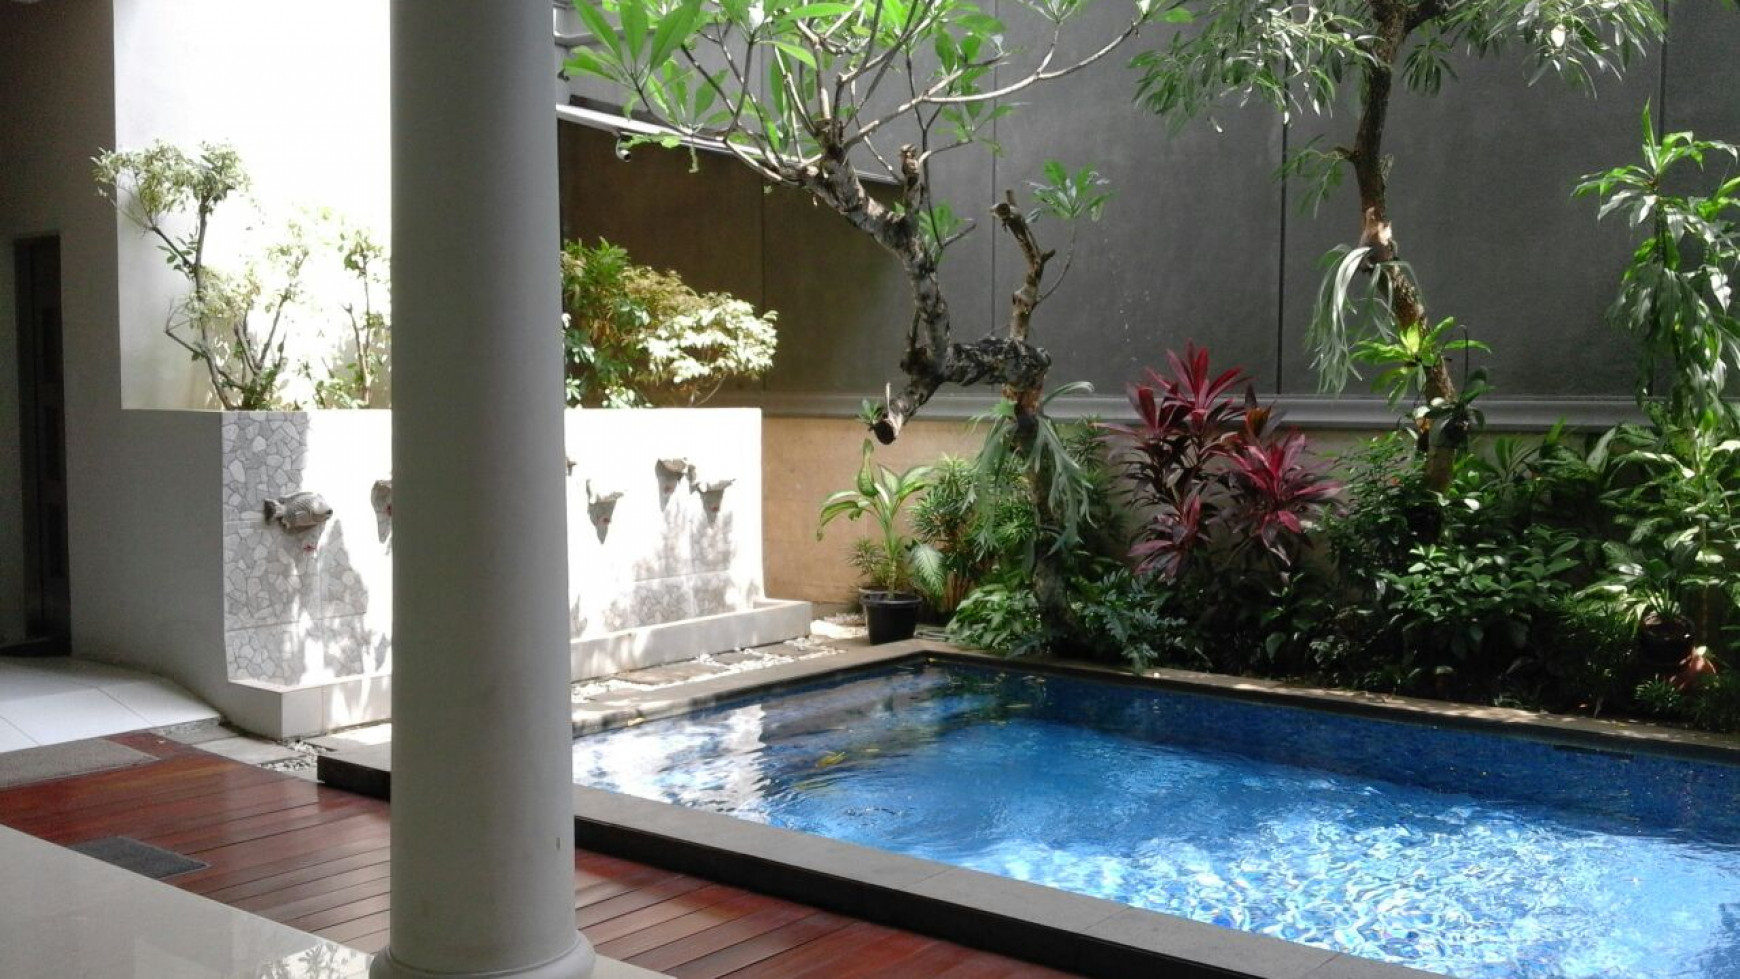 Rumah Mewah dan Siap Huni di kawasan Kebayoran Baru, Jakarta Selatan